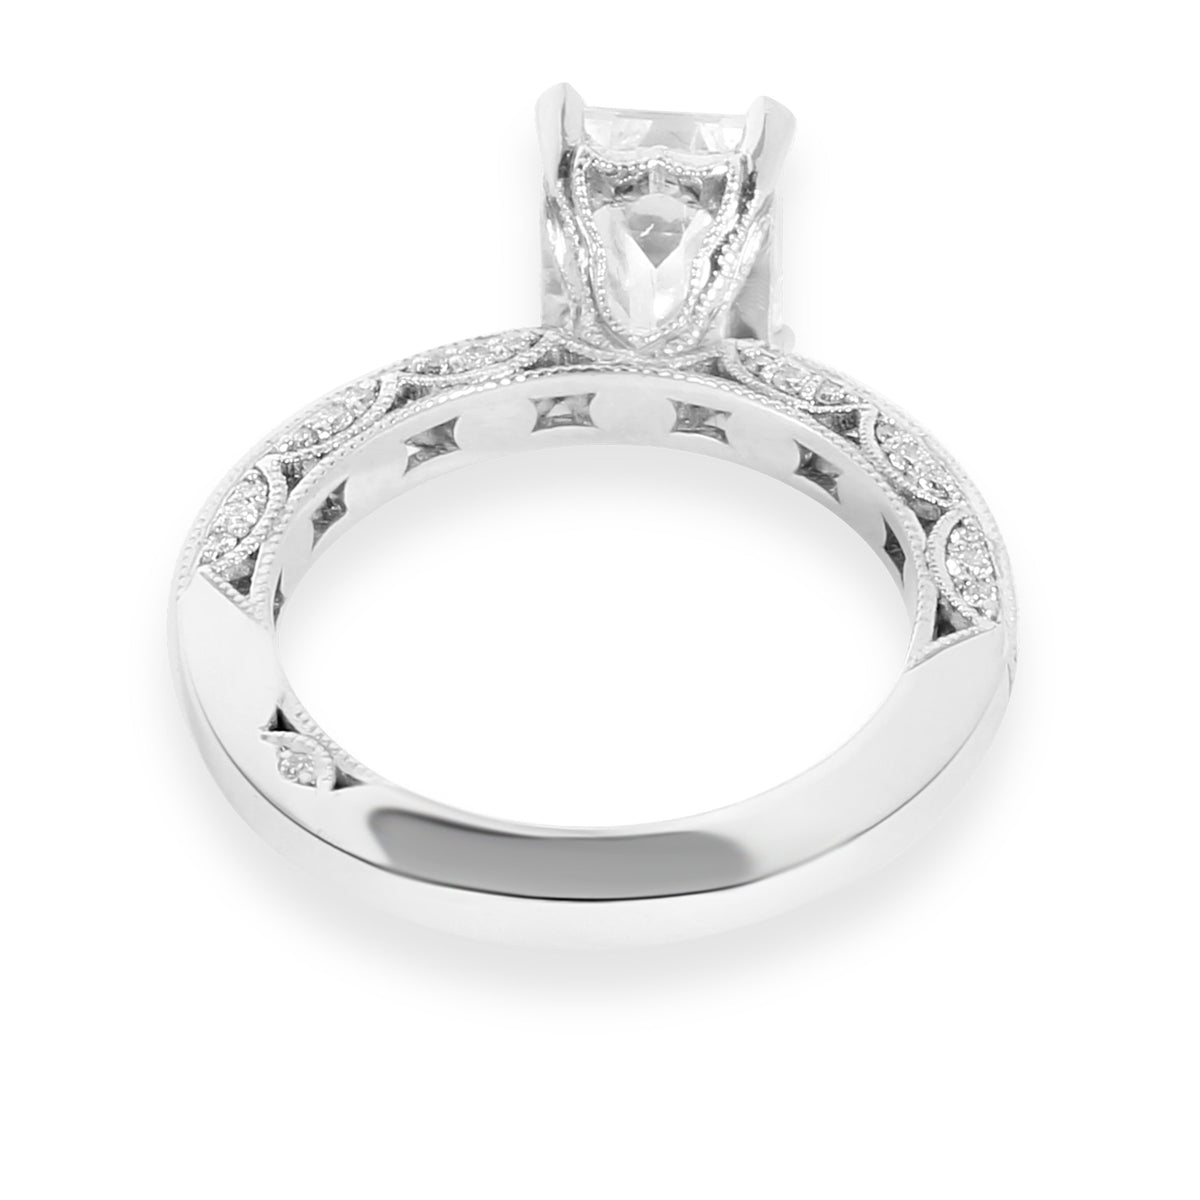 Tacori Diamond Emerald Cut Engagement Ring Setting in Platinum (0.41 CTW)